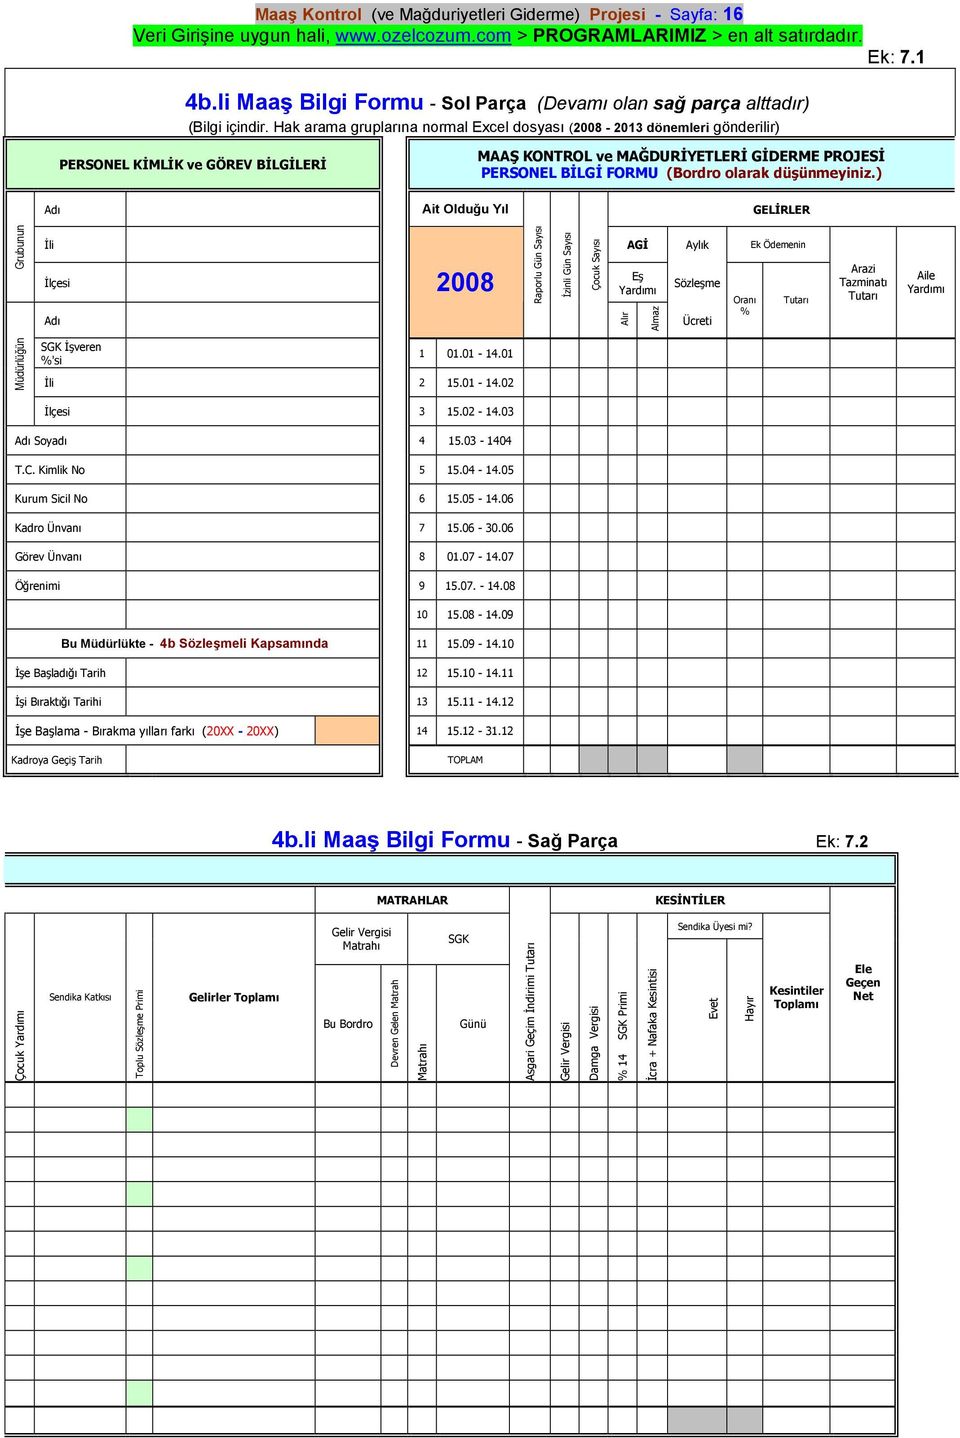 Hak arama gruplarına normal Excel dosyası (2008-2013 dönemleri gönderilir) PERSONEL KİMLİK ve GÖREV BİLGİLERİ MAAŞ KONTROL ve MAĞDURİYETLERİ GİDERME PROJESİ PERSONEL BİLGİ FORMU (Bordro olarak